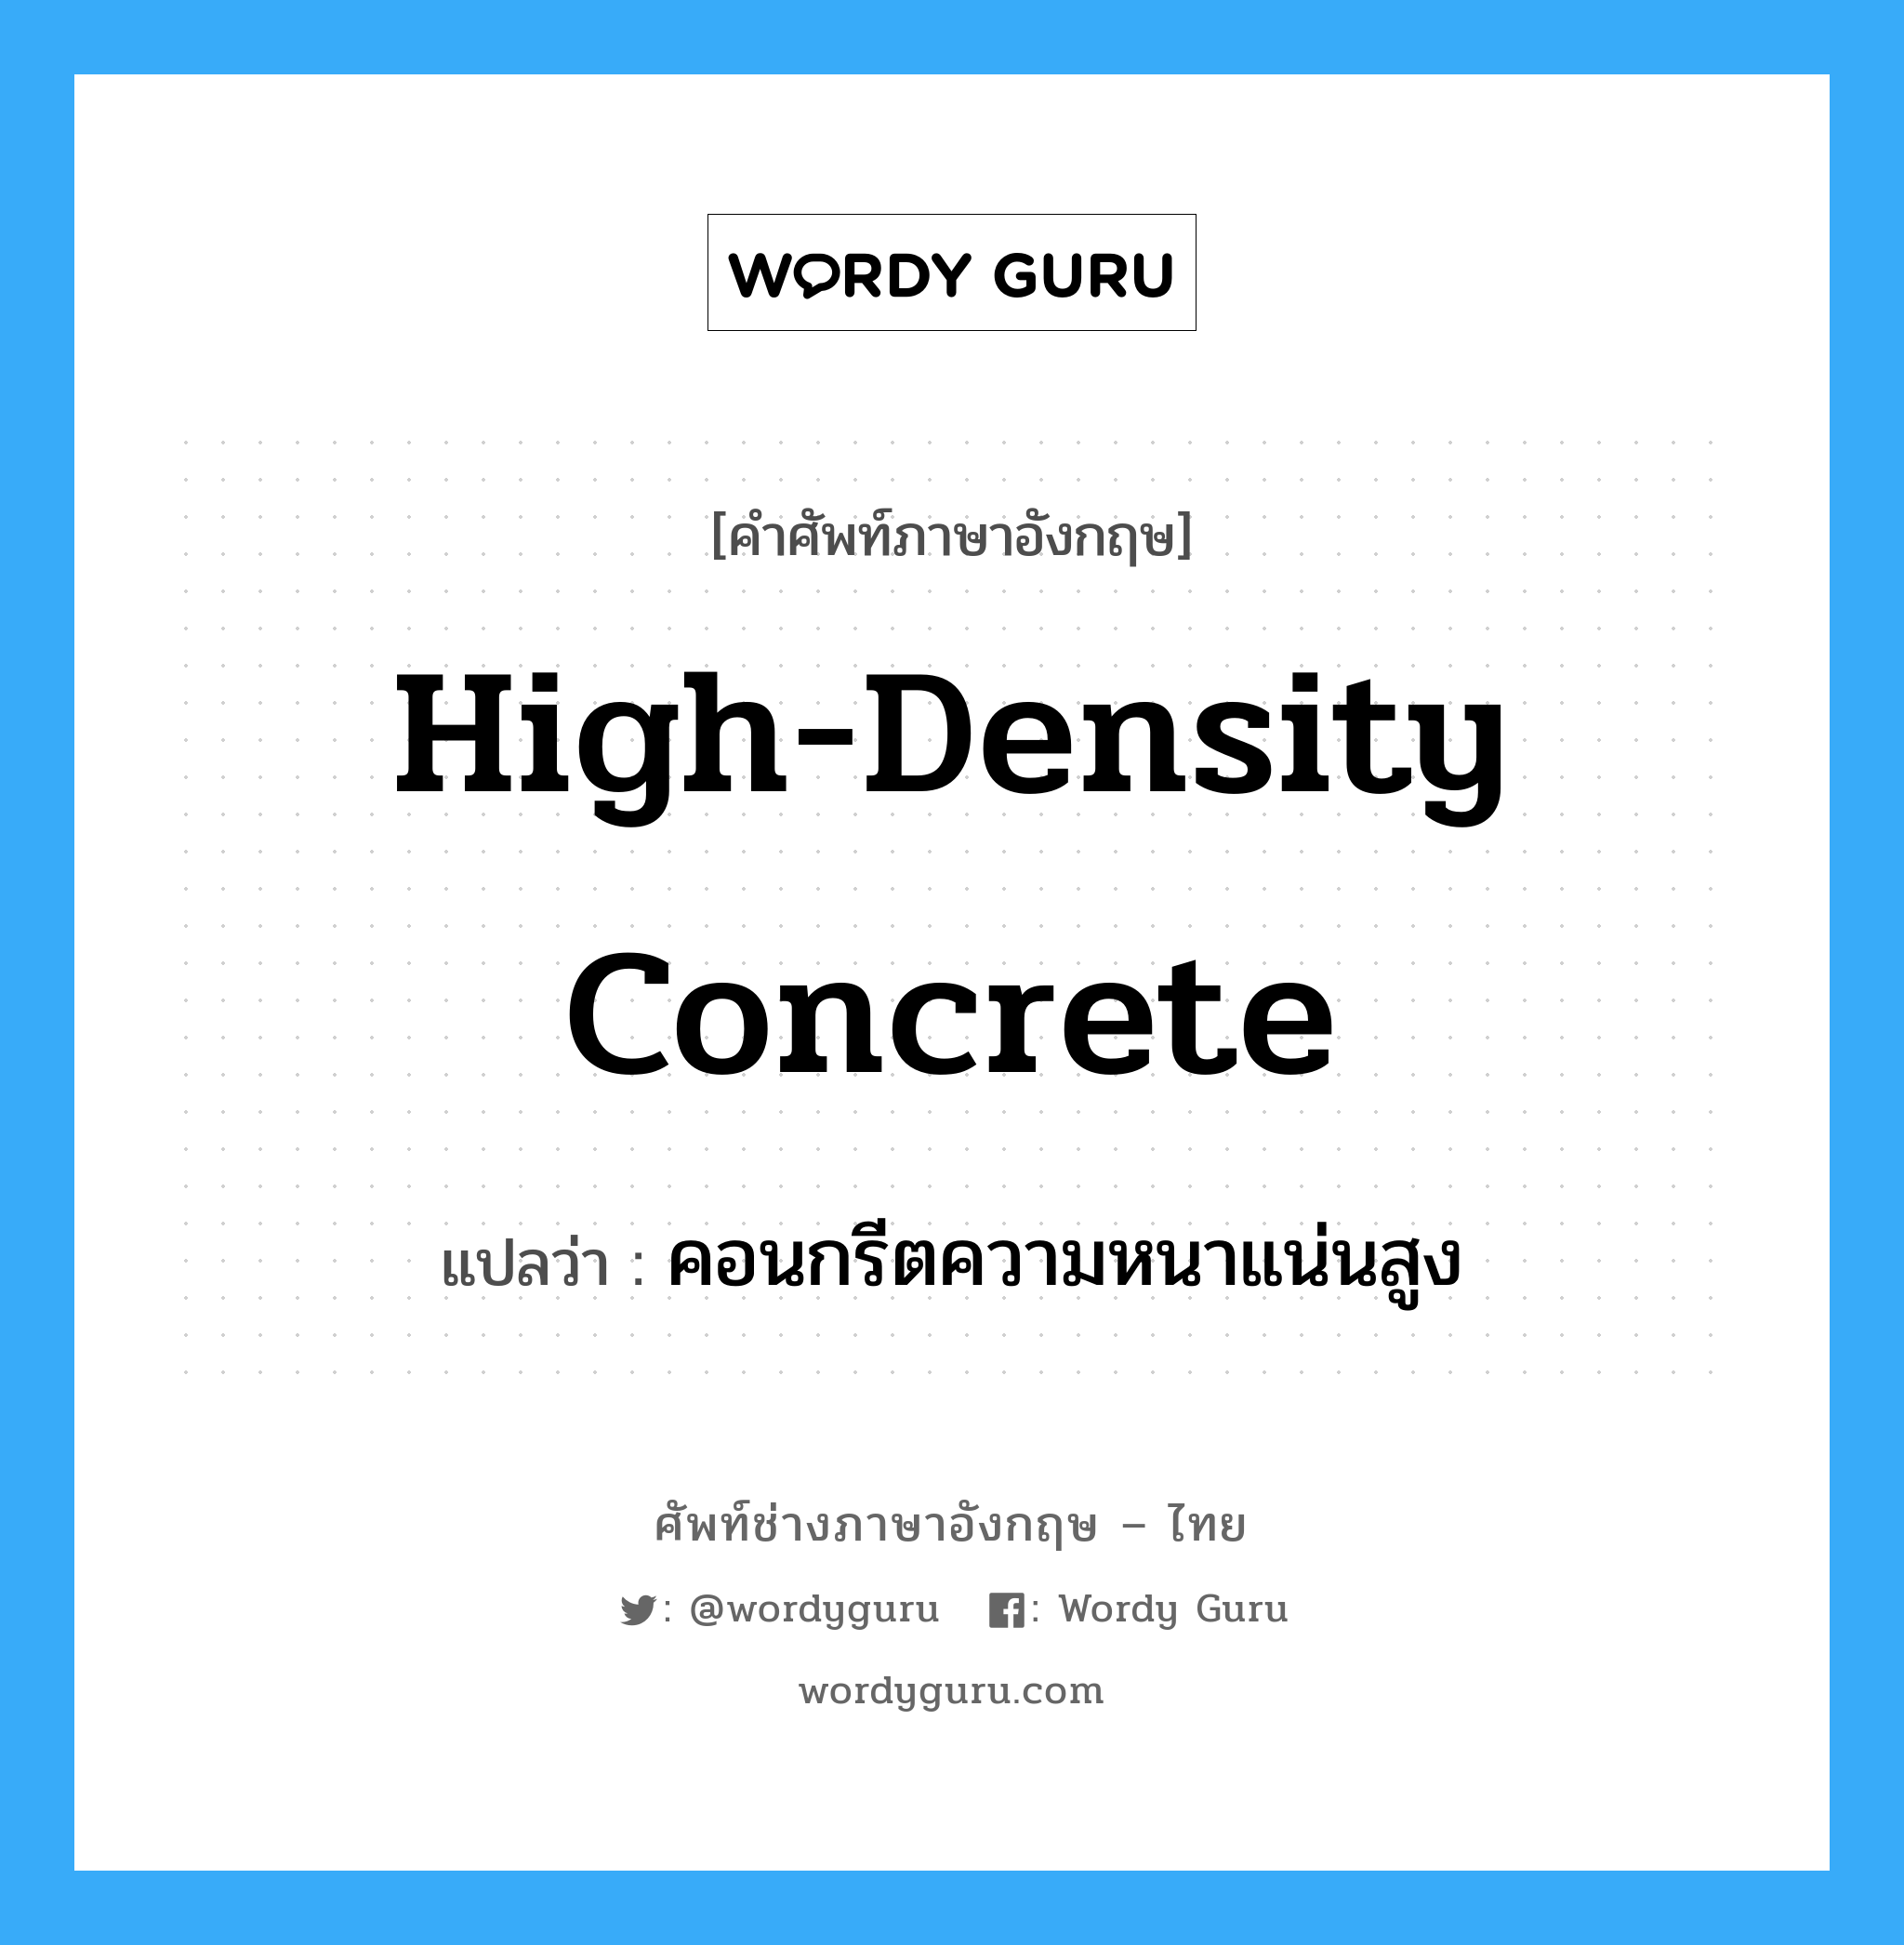 คอนกรีตความหนาแน่นสูง ภาษาอังกฤษ?, คำศัพท์ช่างภาษาอังกฤษ - ไทย คอนกรีตความหนาแน่นสูง คำศัพท์ภาษาอังกฤษ คอนกรีตความหนาแน่นสูง แปลว่า high-density concrete